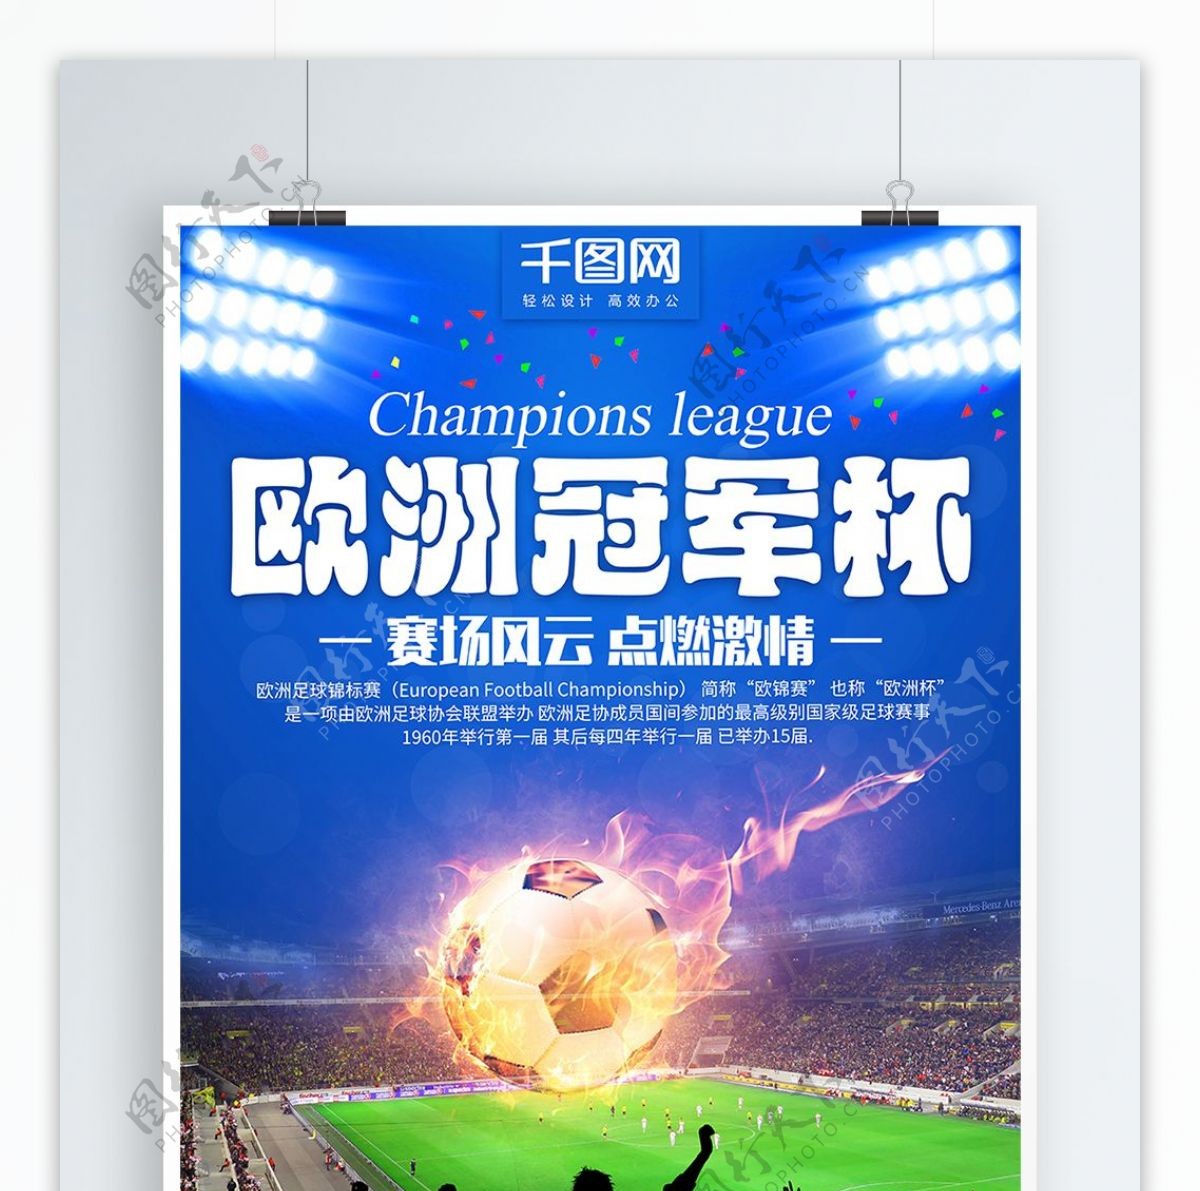 蓝色炫酷足球体育比赛欧洲冠军杯商业海报